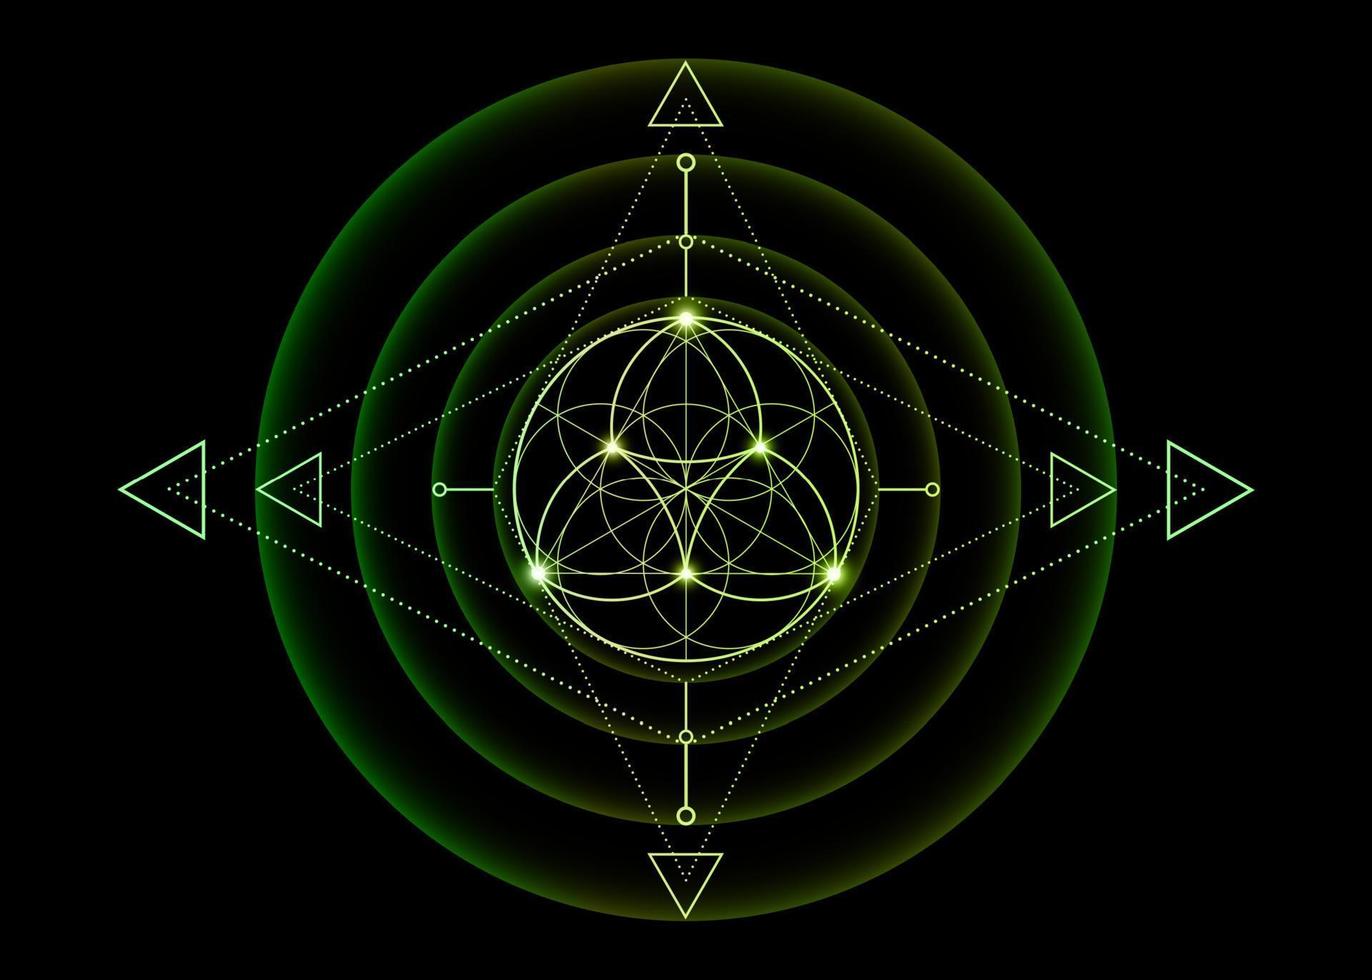 geometria sagrada, flor da vida, mandala de flor de lótus. símbolo de logotipo gradiente verde de harmonia e equilíbrio, ornamento geométrico brilhante, relaxamento de ioga, vetor isolado em fundo preto